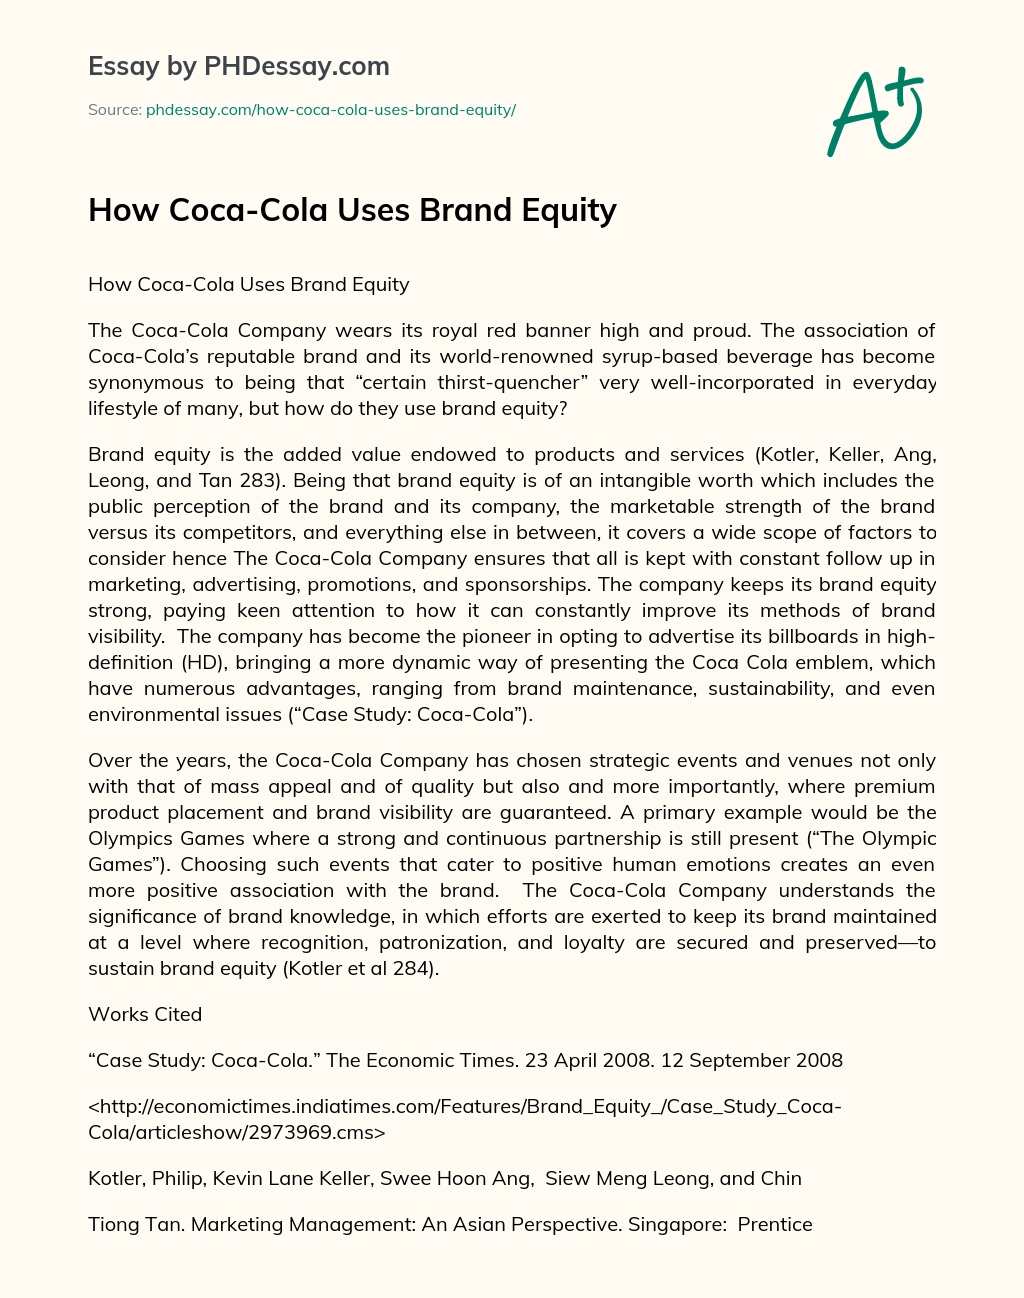 How Coca-Cola Uses Brand Equity essay